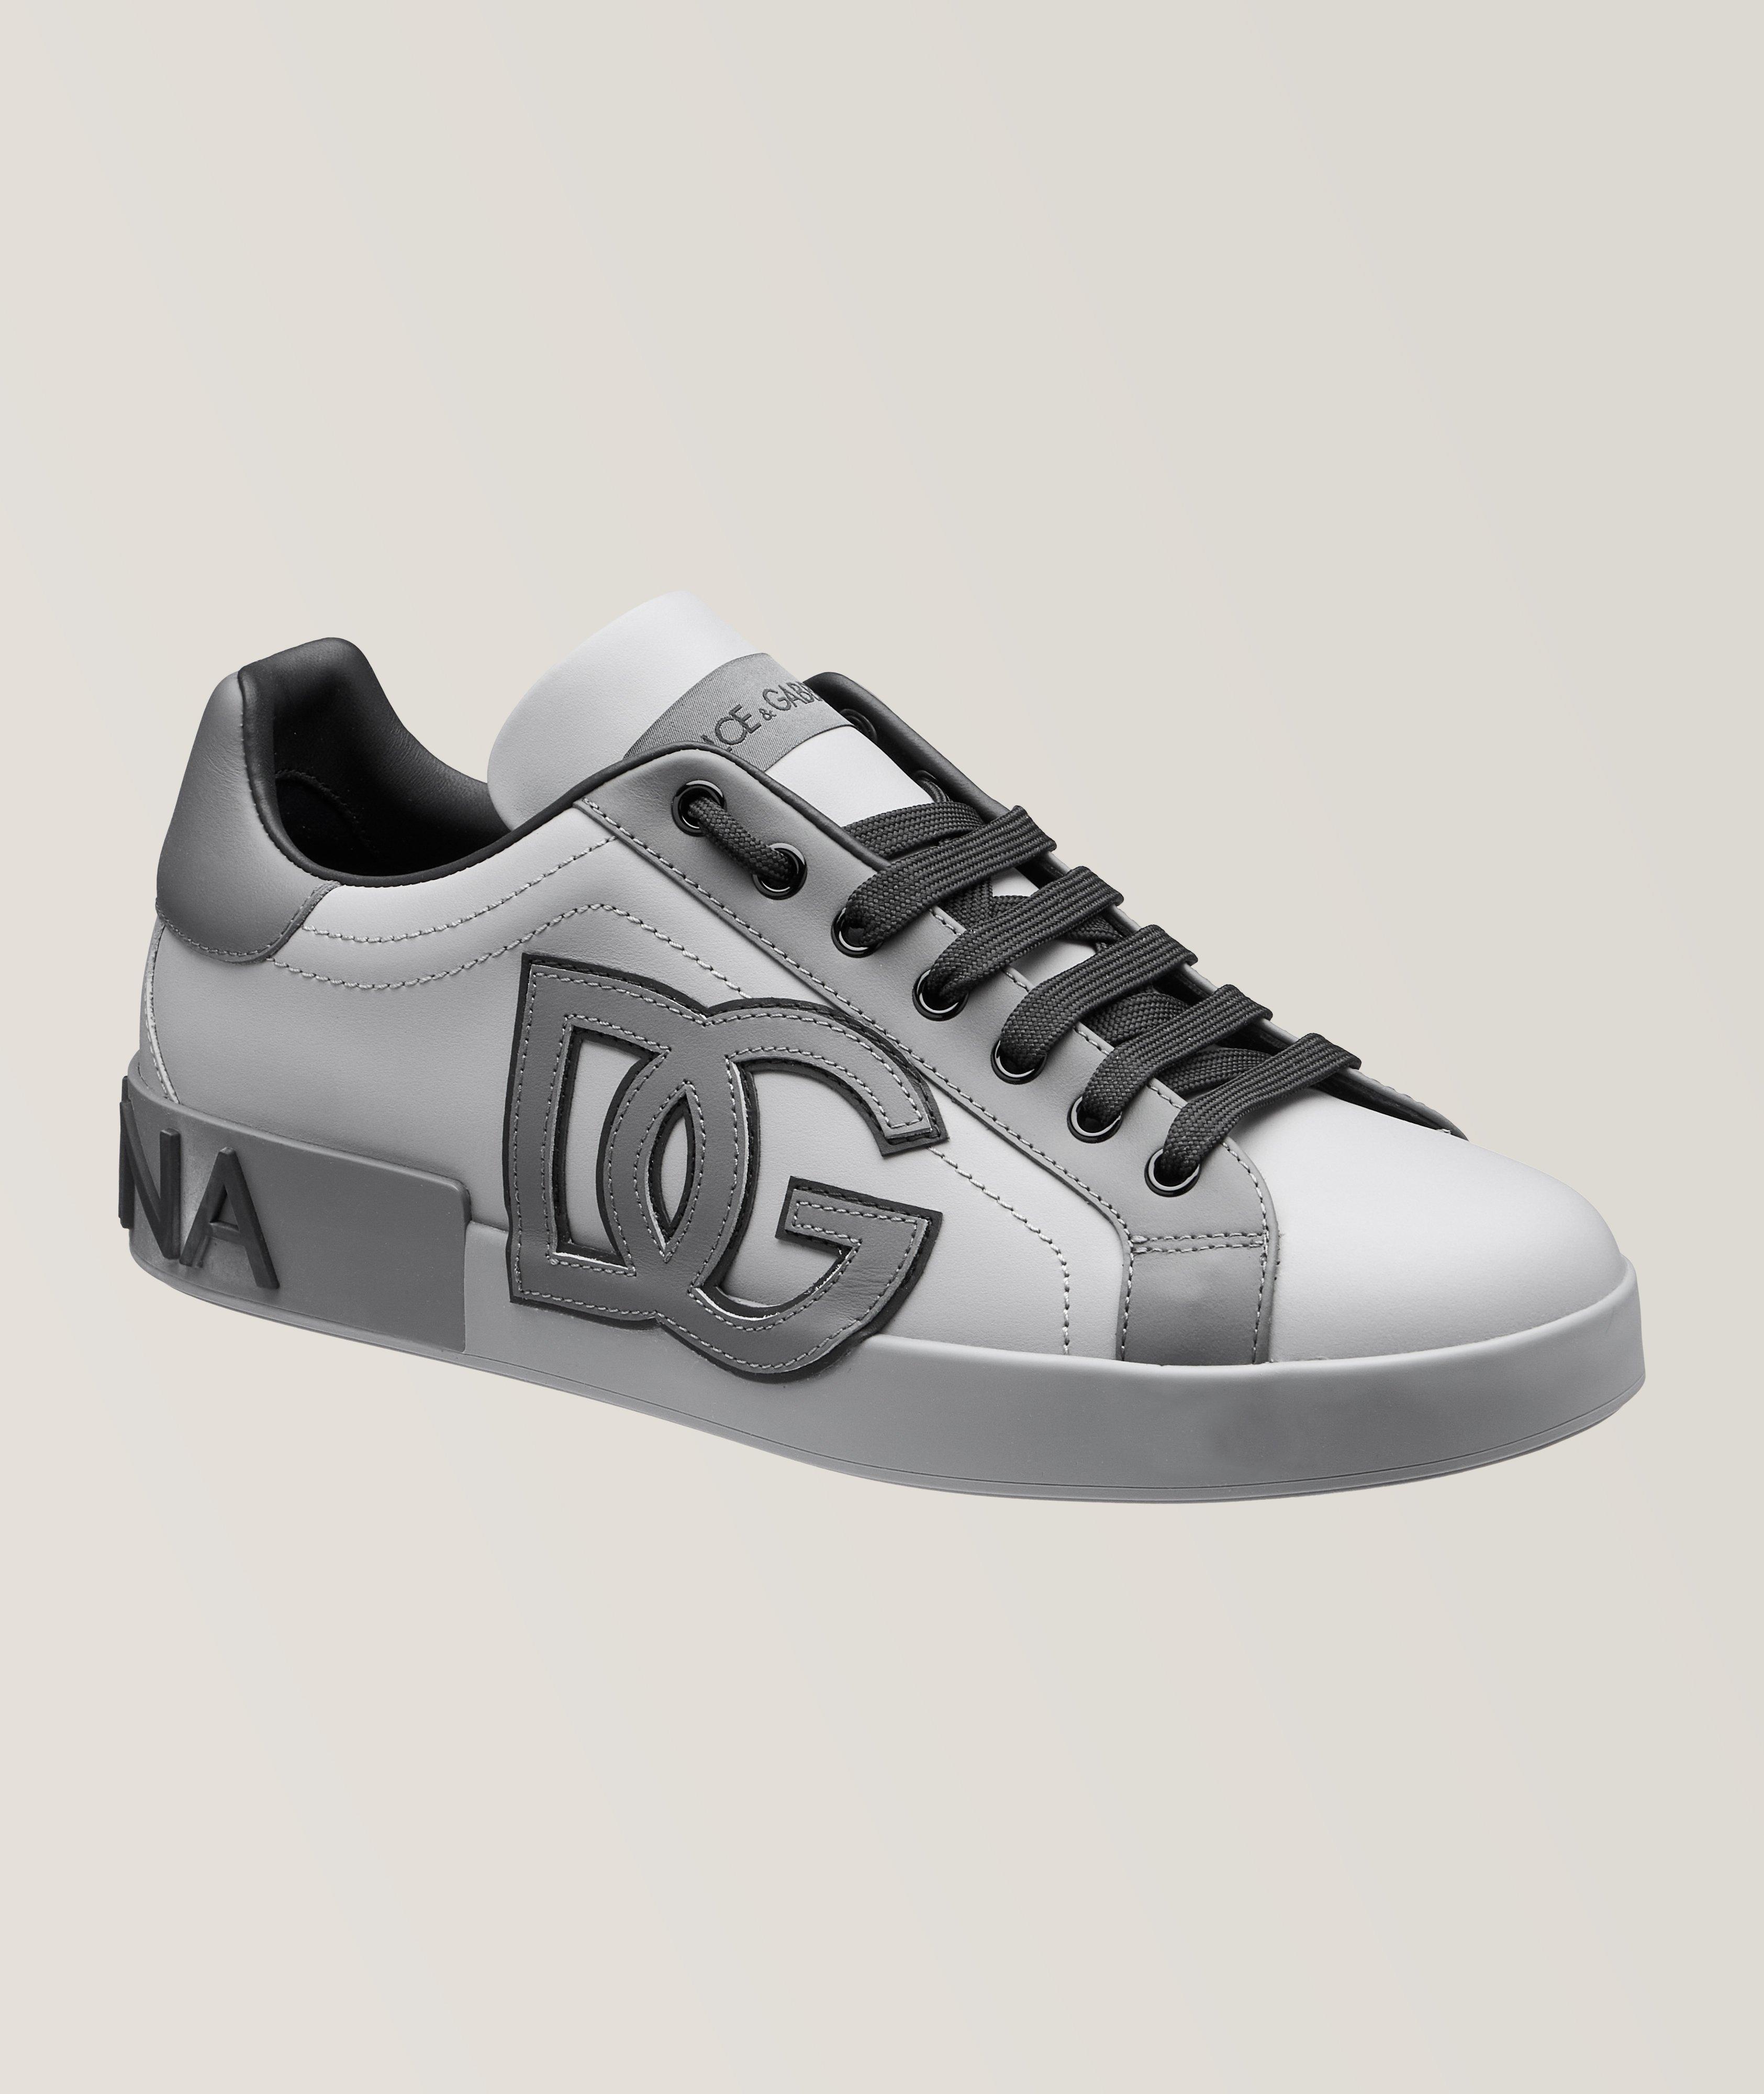 Portofino Nappa Leather Sneakers image 0